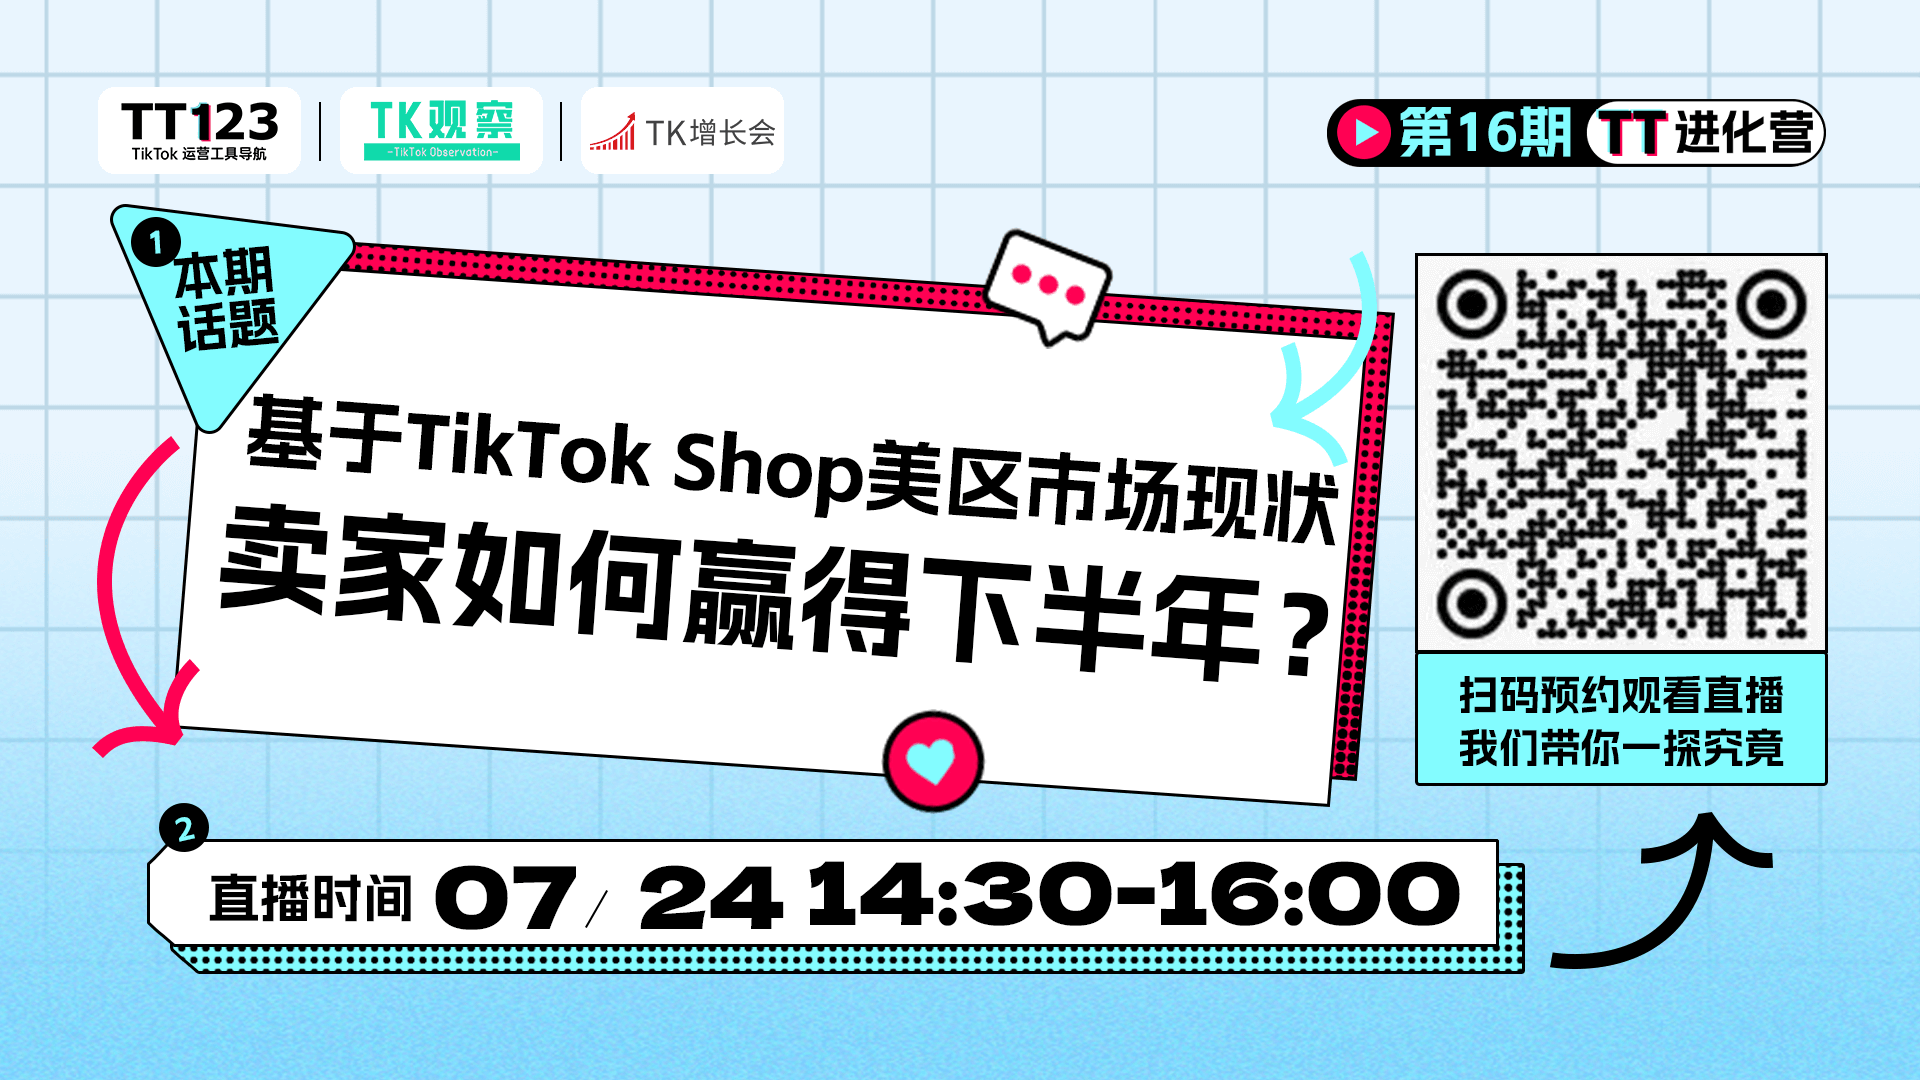 基于TikTok Shop美区当前市场现状，卖家应如何赢得下半年？